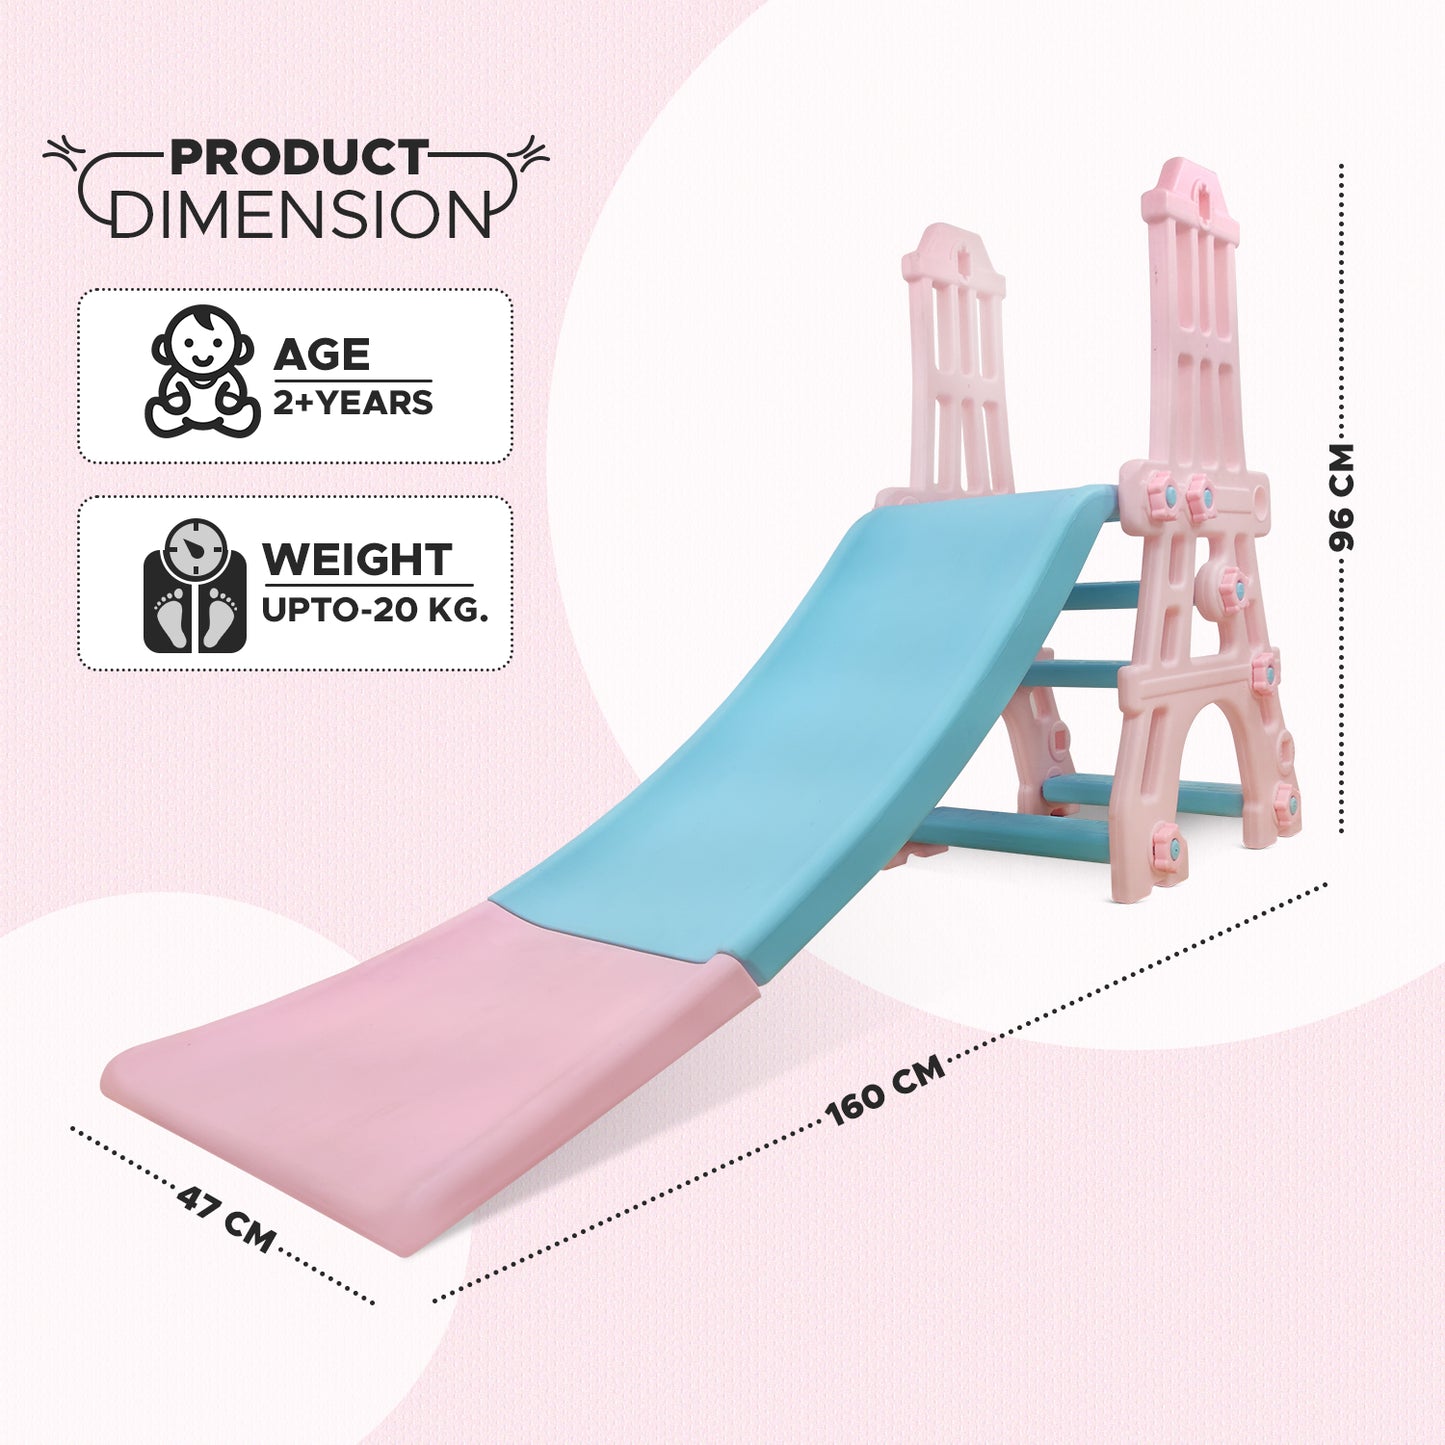 NHR Tower Garden Slide for Kids (Multicolor)